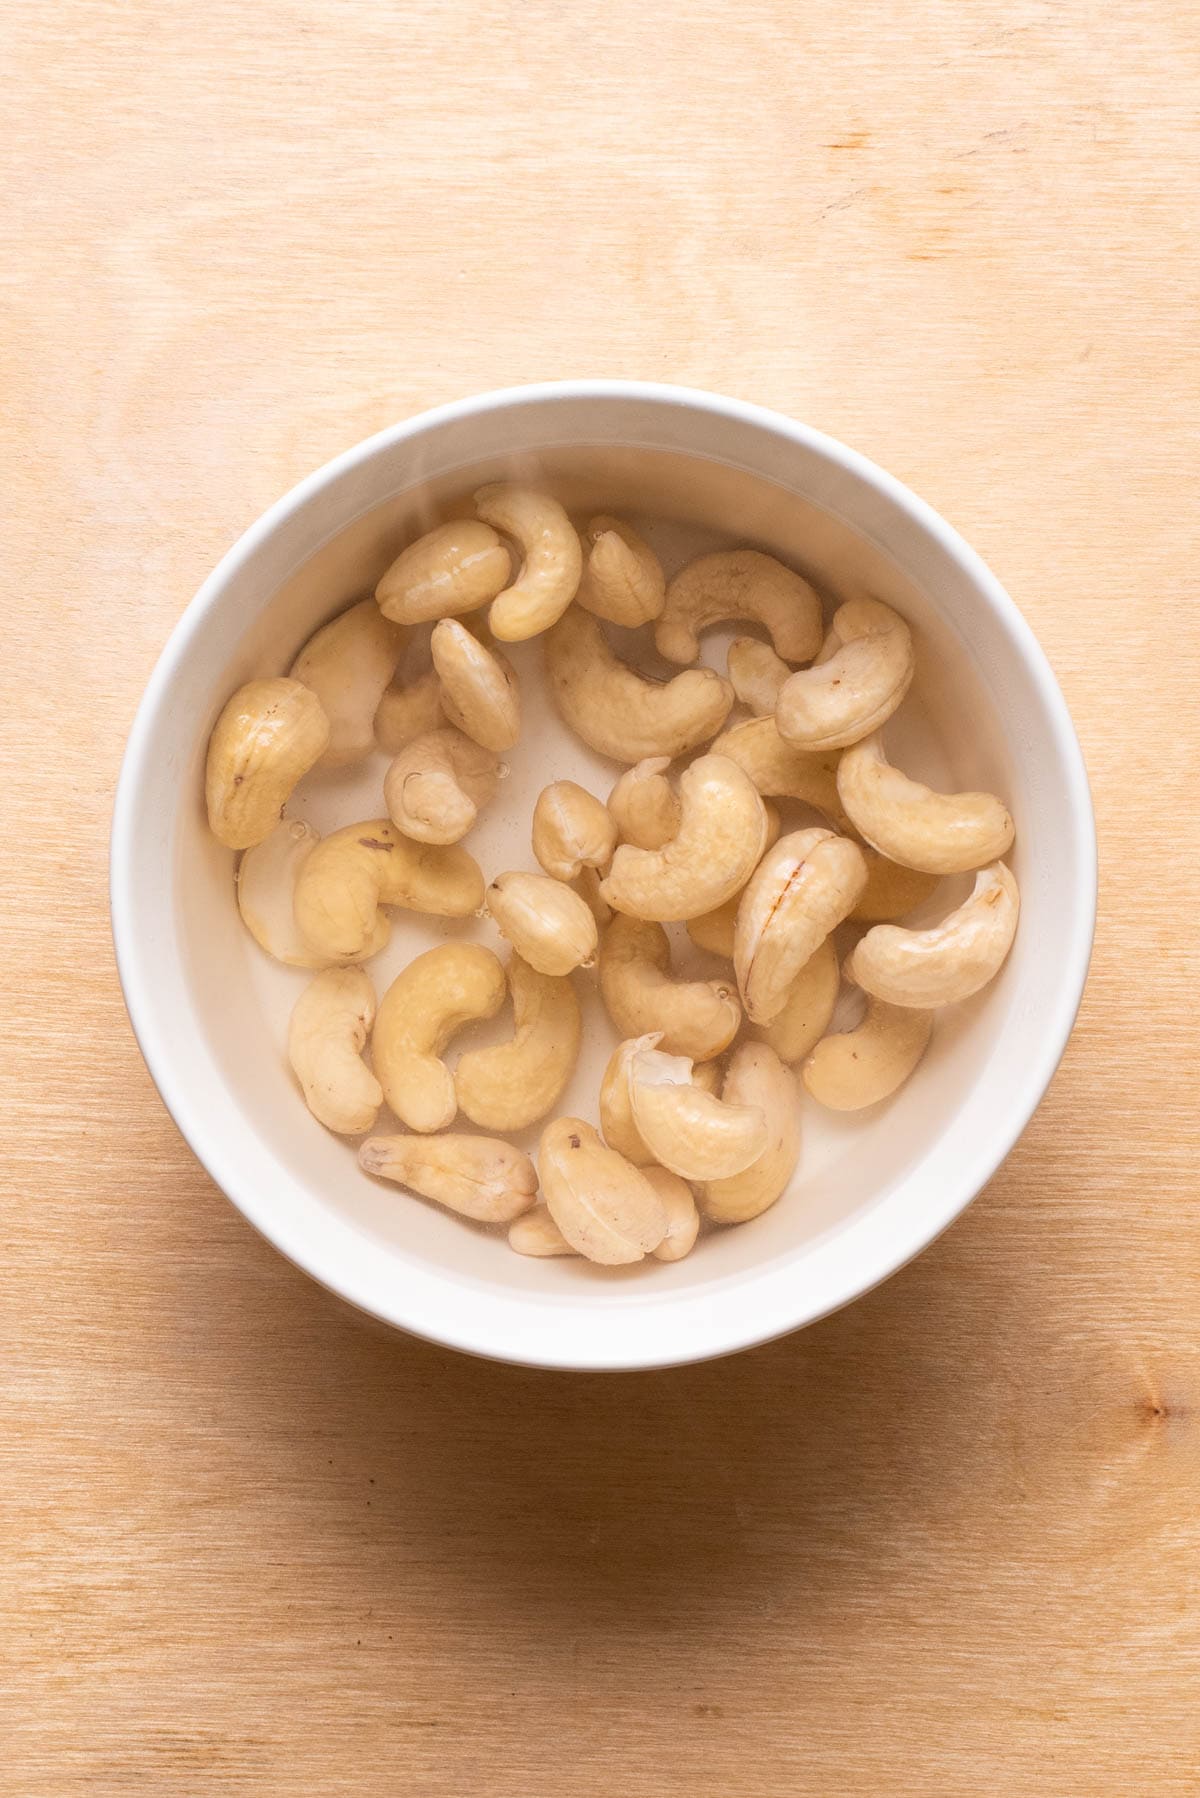 Raw cashews soaking in boiling water.